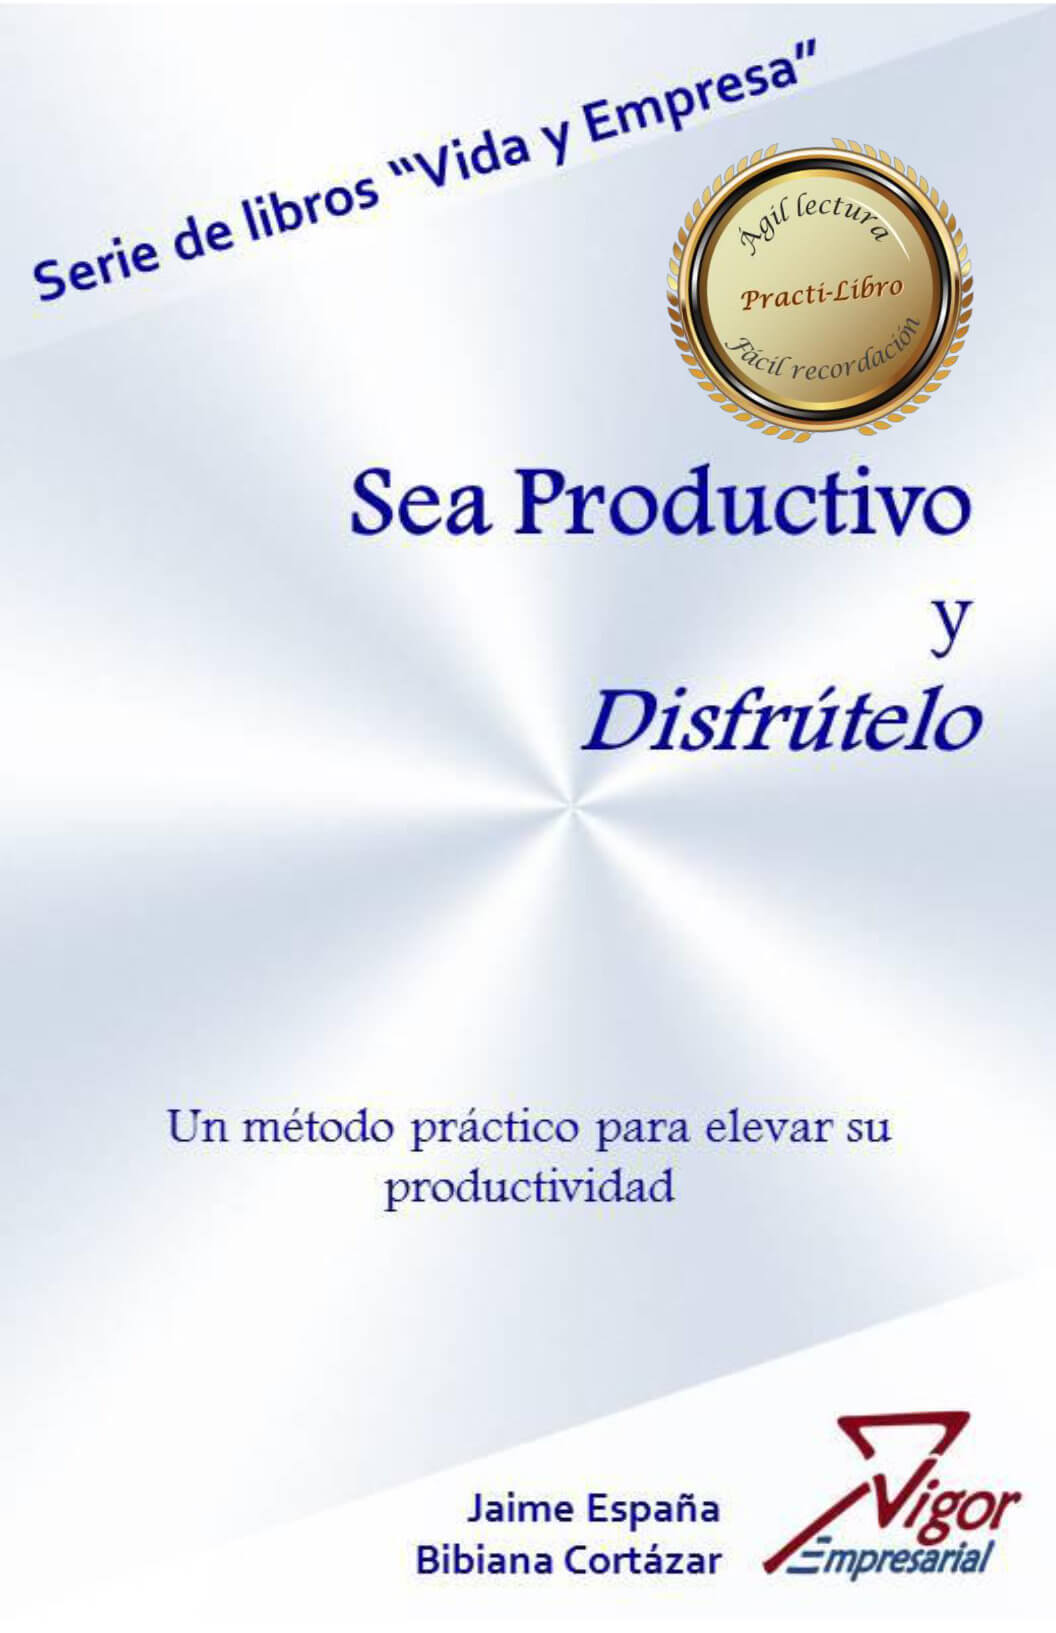 Libro Sea Productivo y disfrútelo por Jaime España